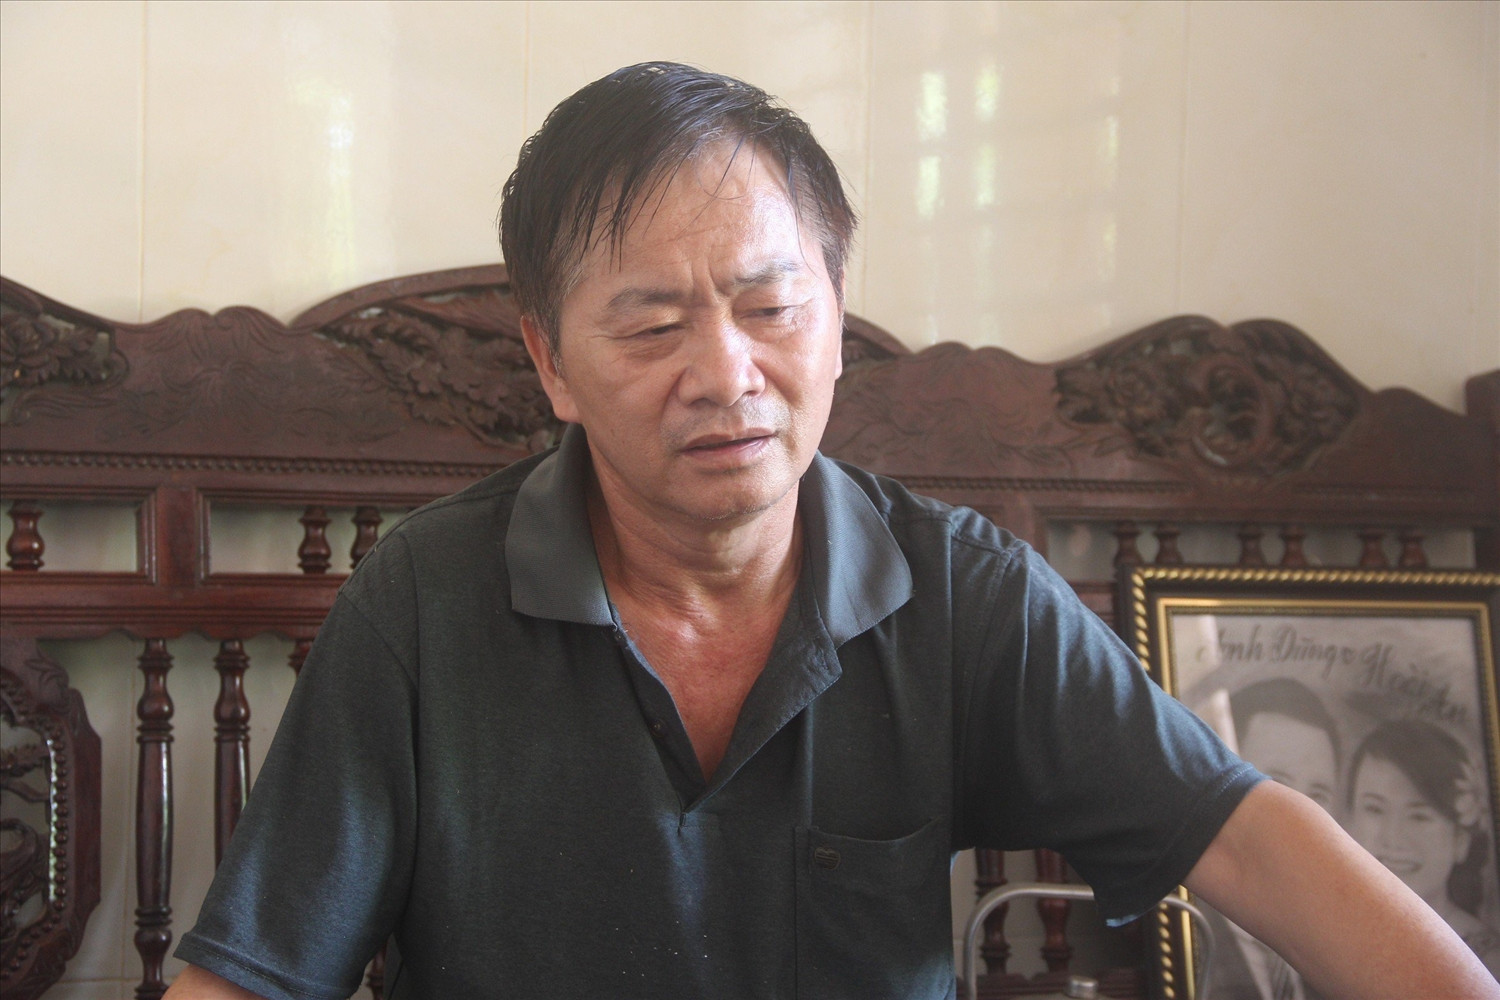 Thời điểm xảy ra vụ án, anh Nguyễn Sỹ Lý đang là giảng viên đại học của Đại học Tây Nguyên. Ảnh: HSVA.